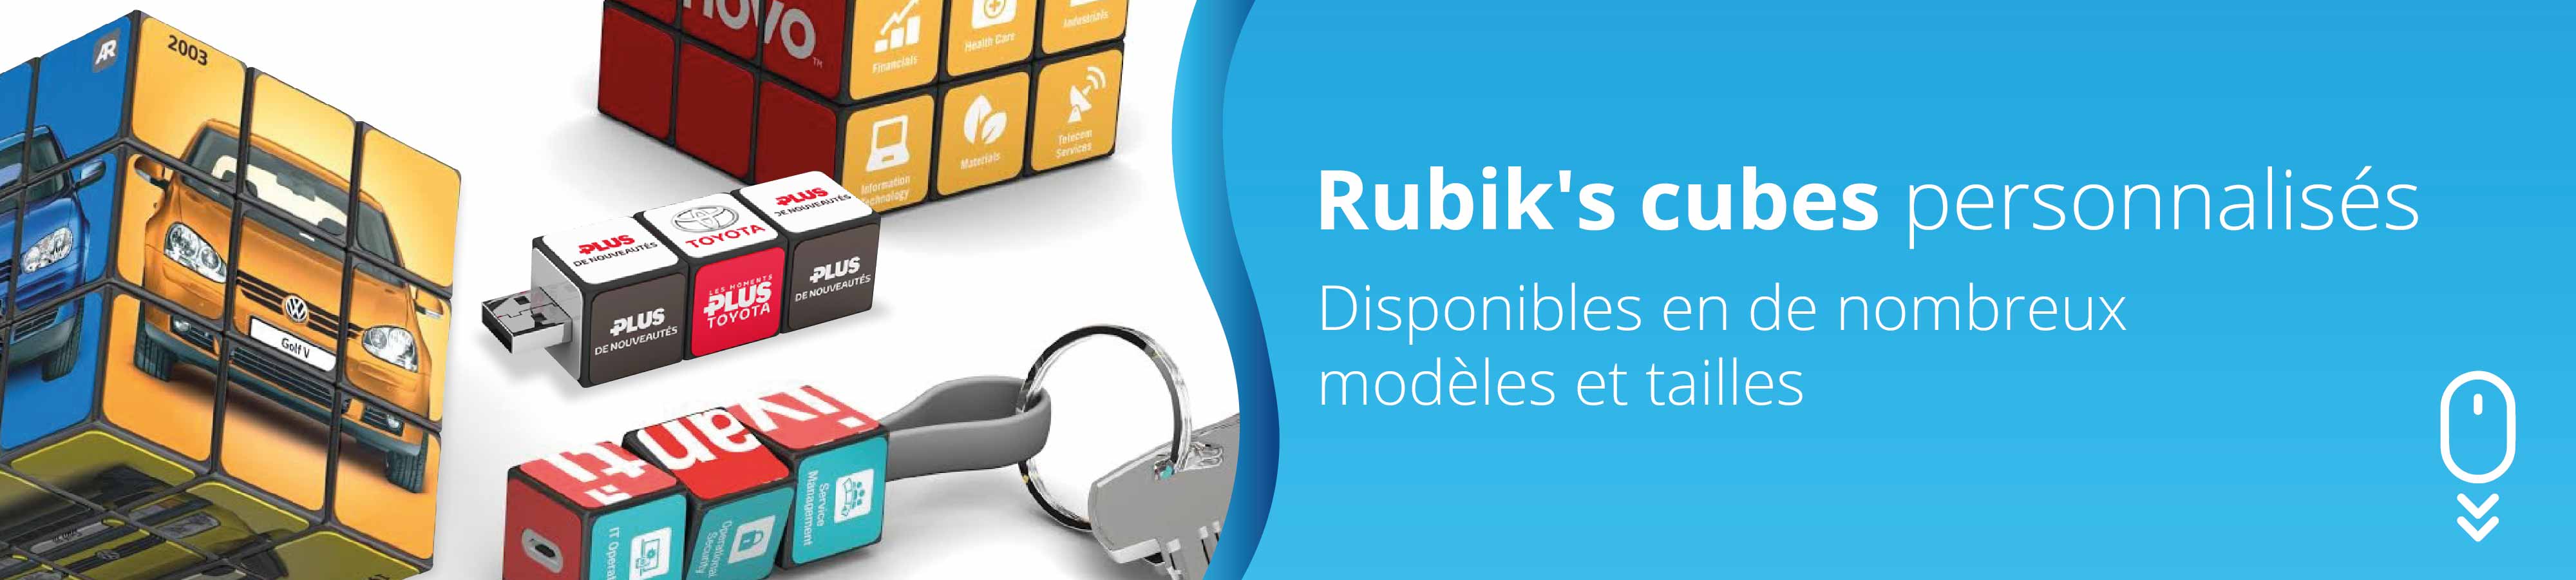 Rubiks-cubes-personnalises